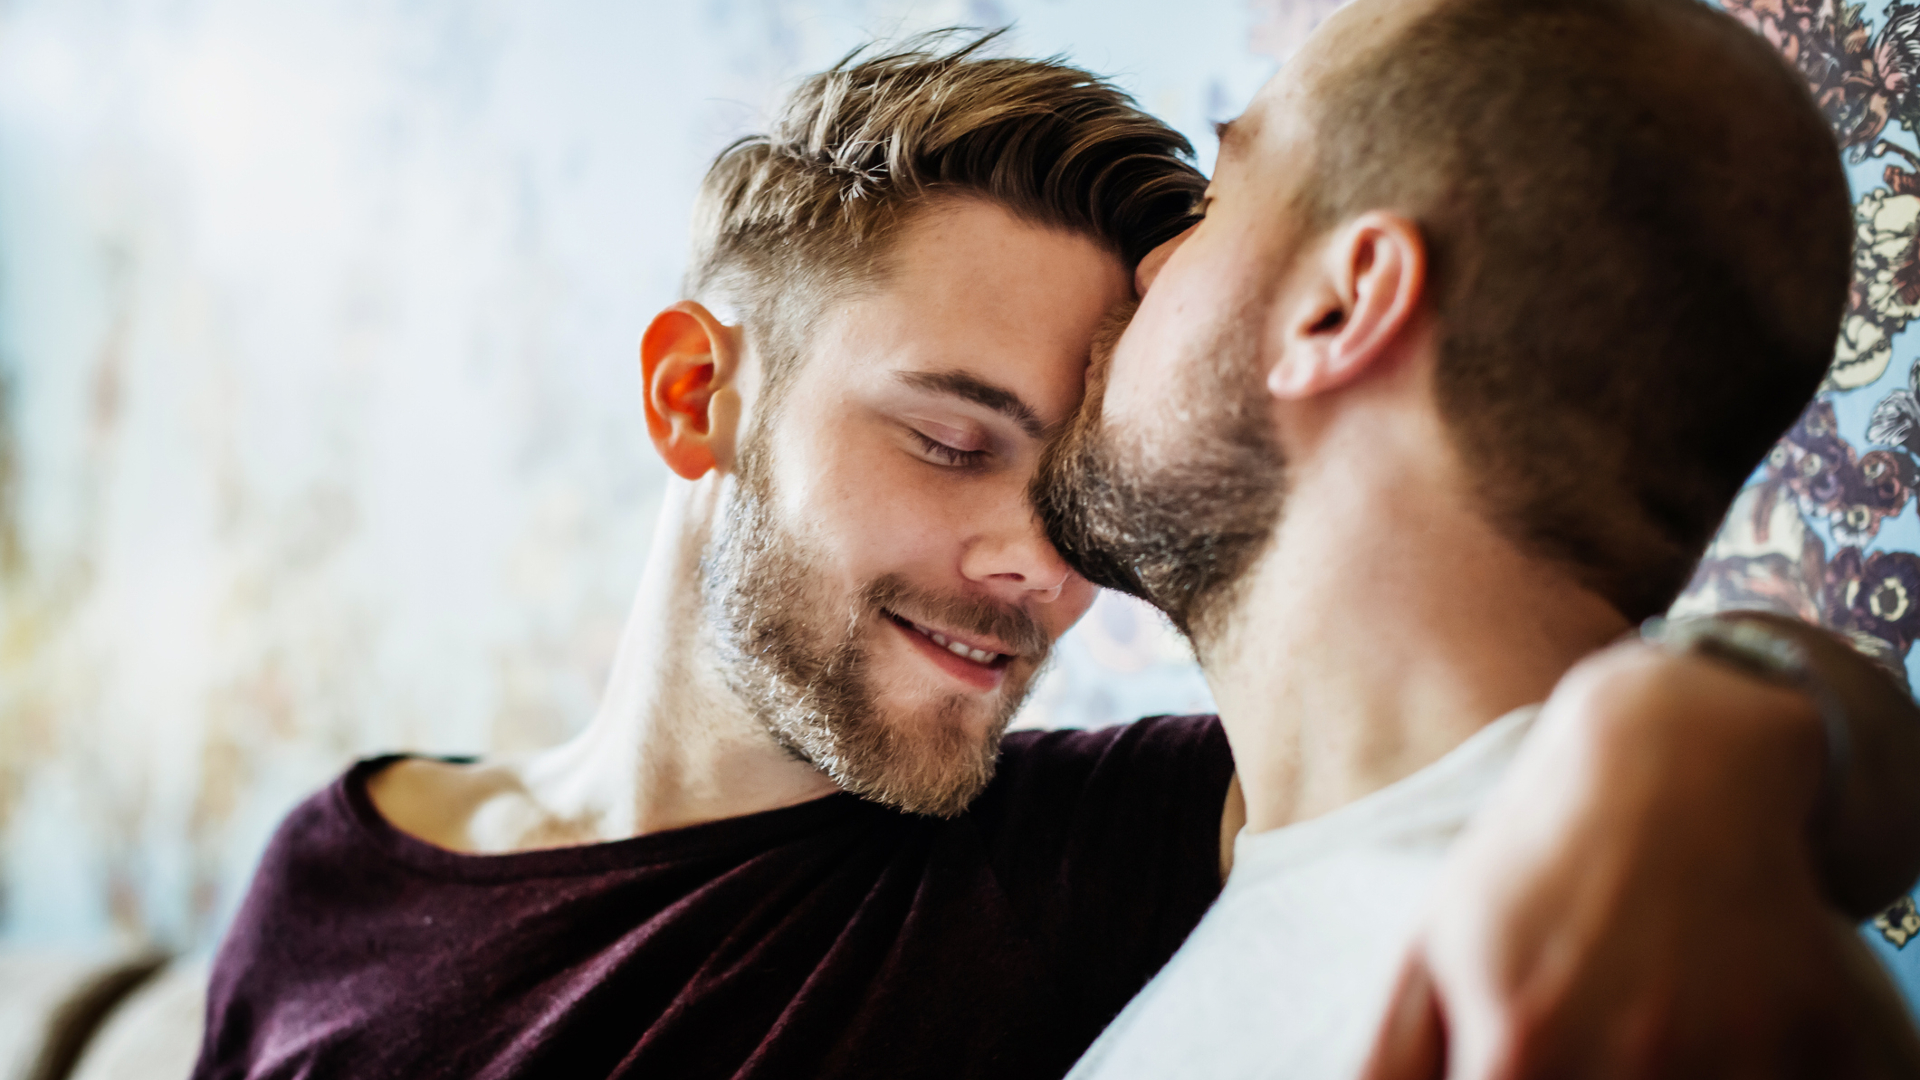 Egy szexológus szerint semmi meglepő sincs abban, hogy heteró férfiak más férfiakkal fekszenek le